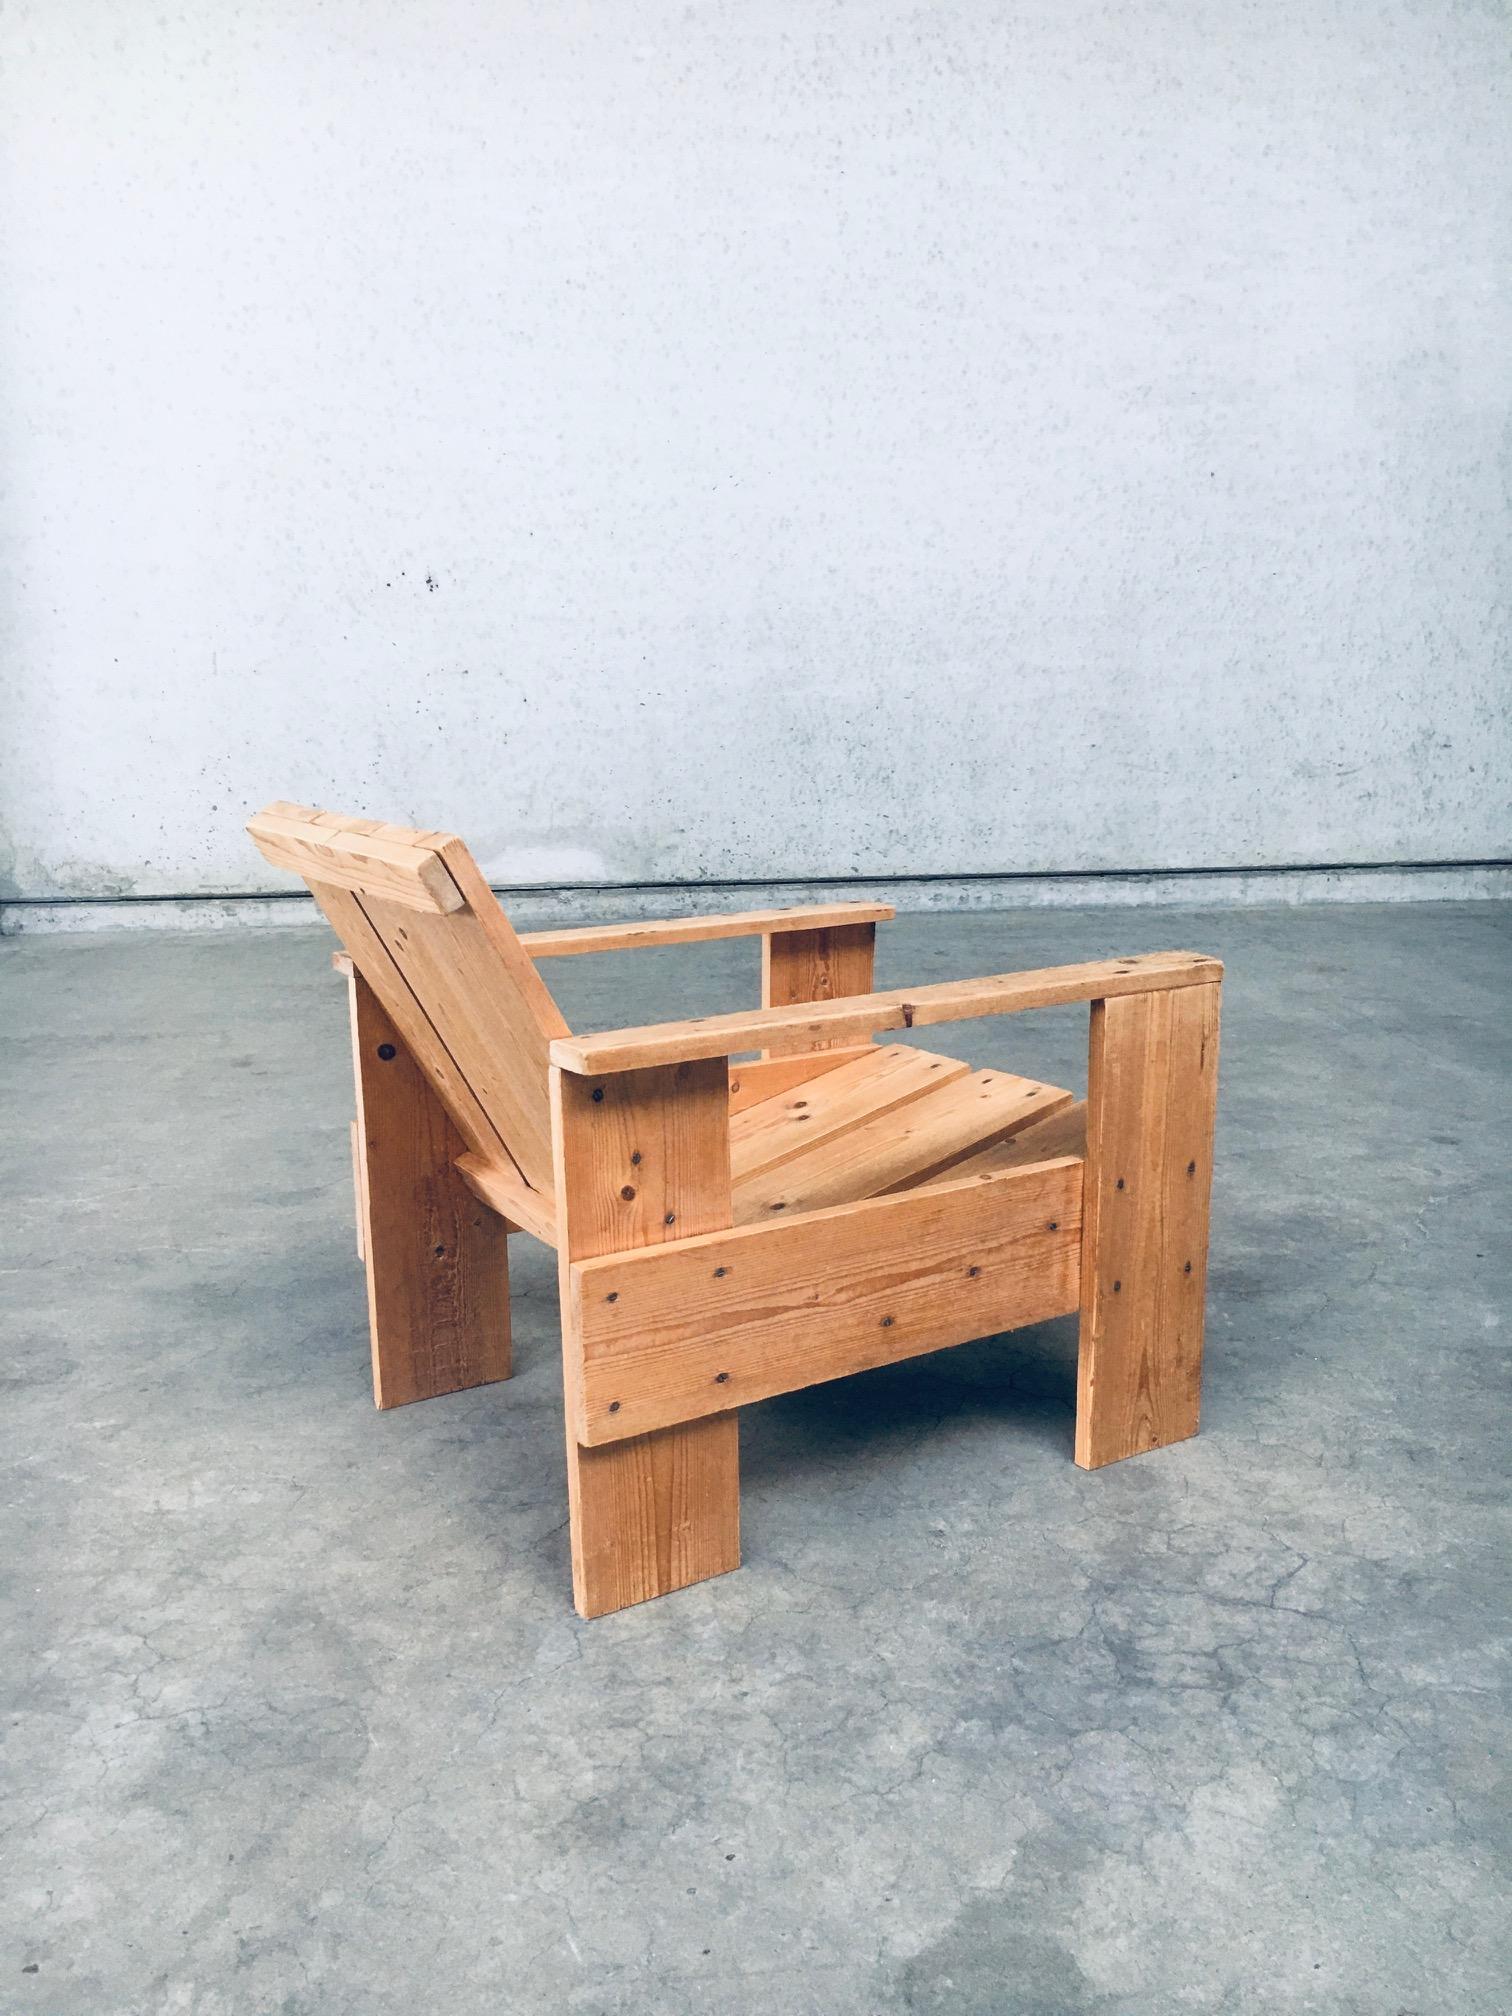 De Stijl Movement Dutch Design Pine CRATE Chair by Gerrit Rietveld For Sale 7